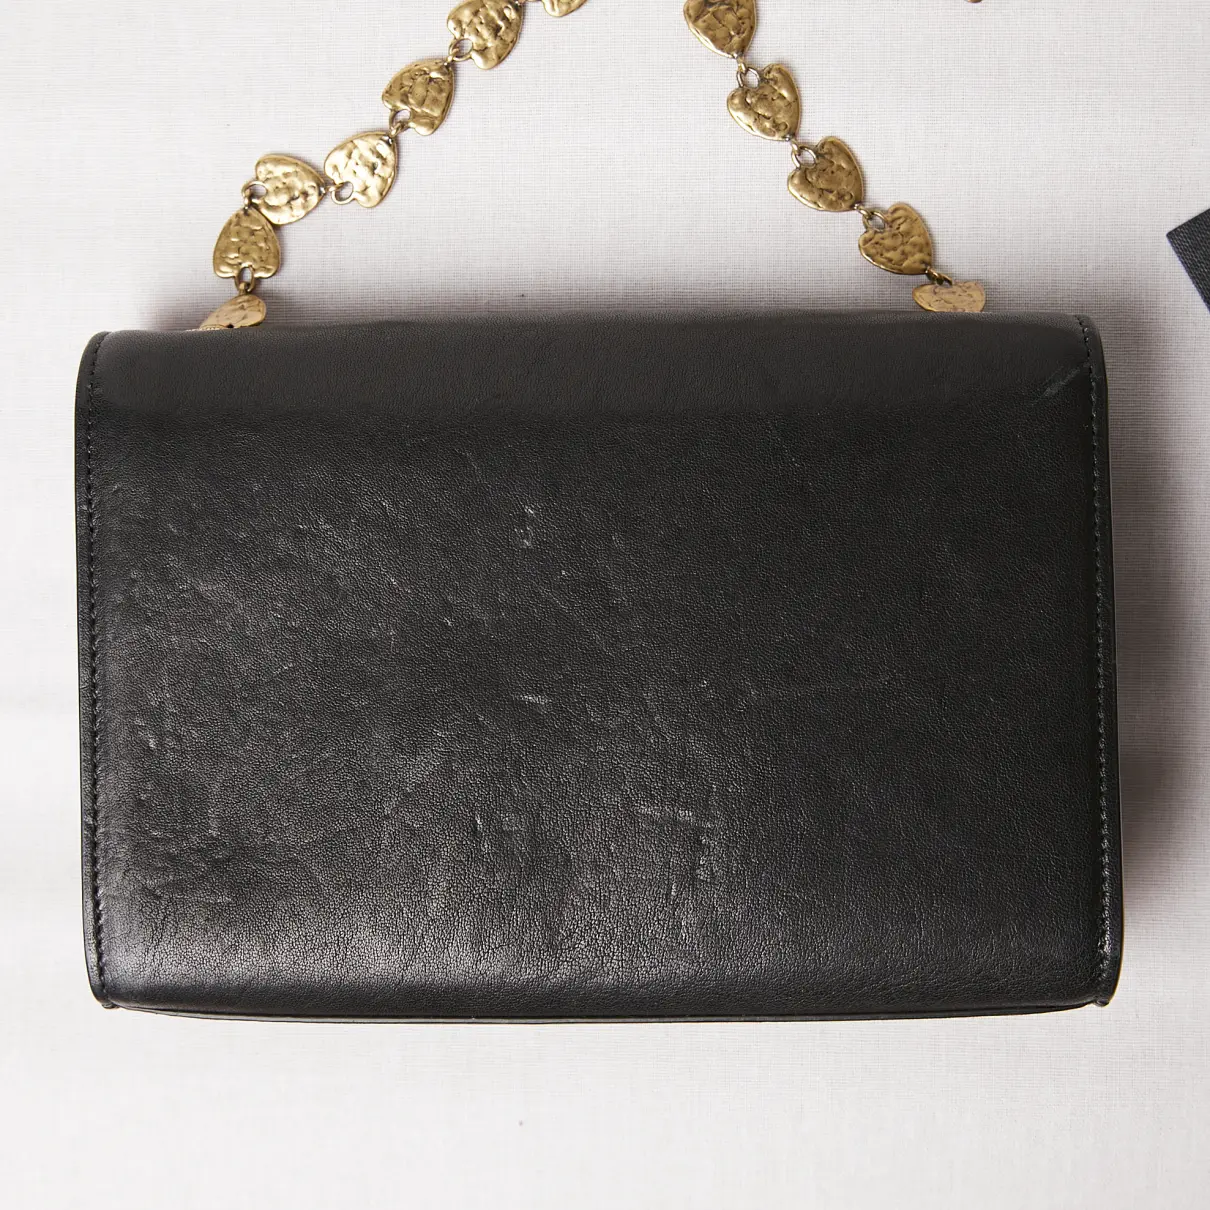 Kate monogramme leather clutch bag Saint Laurent